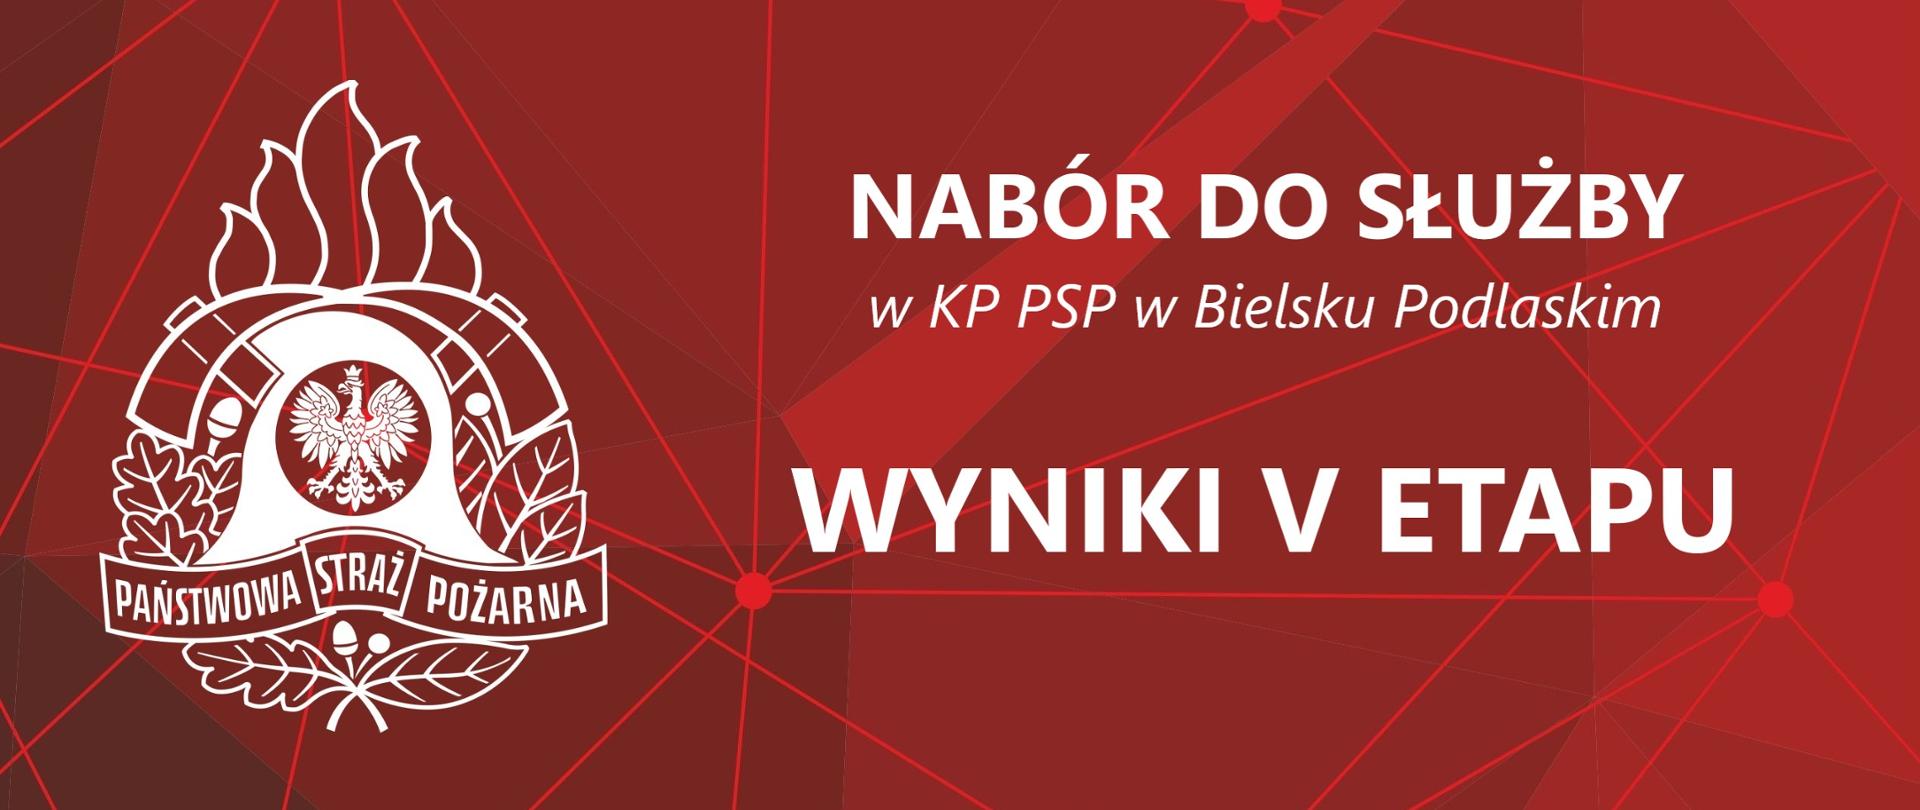 Baner z logo PSP i Napisem: Nabór do służby w KP PSP w Bielsku Podlaskim - Wyniki V etapu